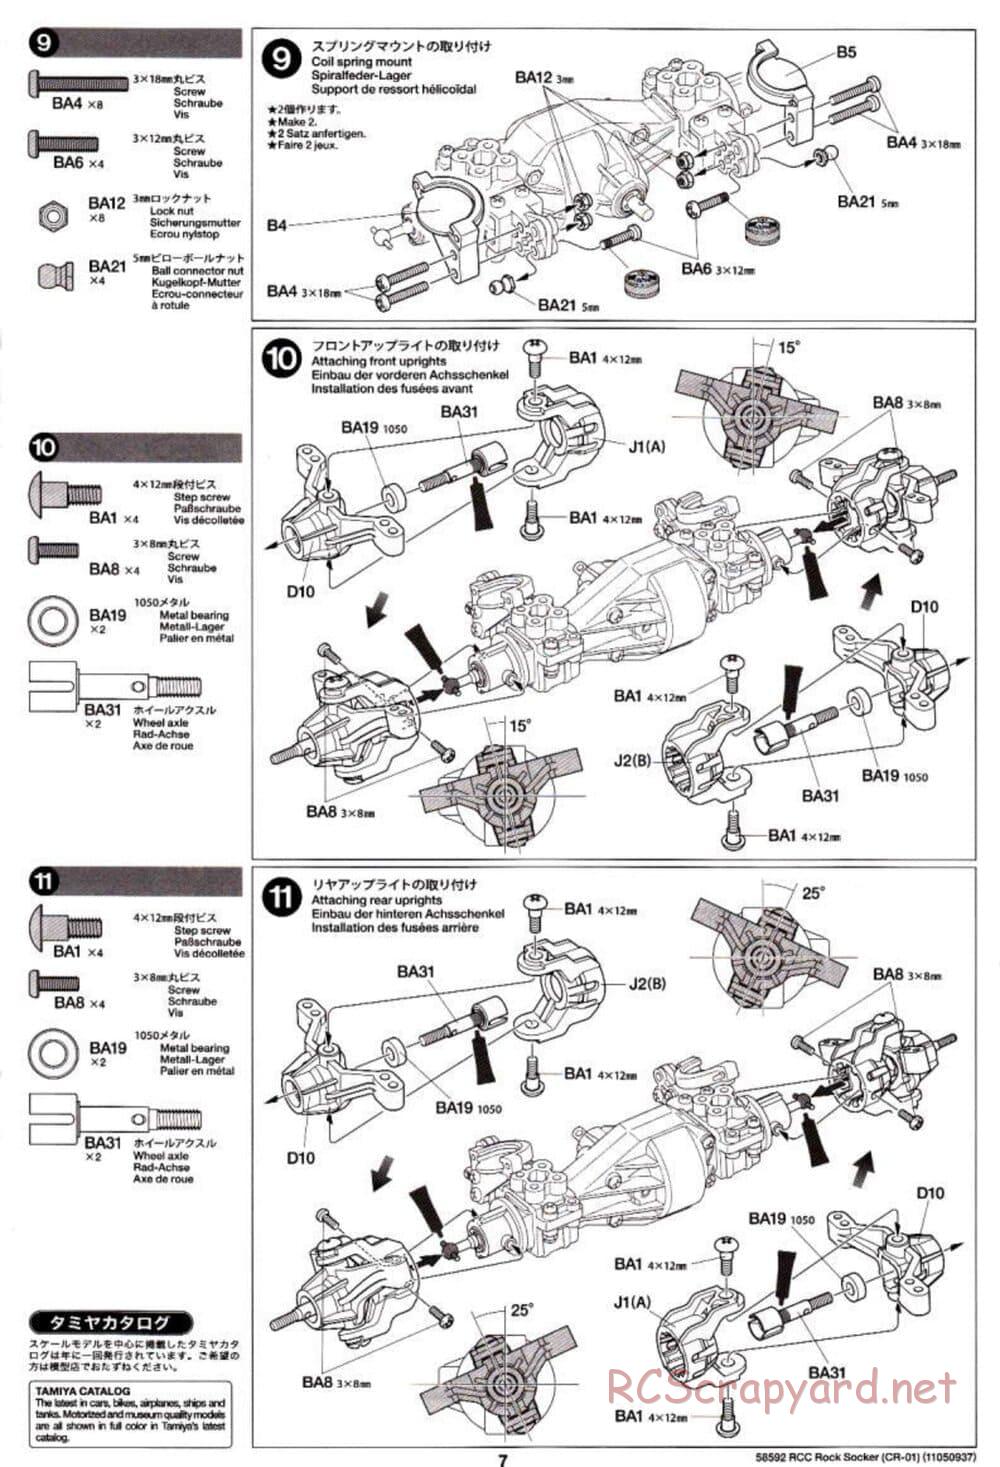 Tamiya - Rock Socker - CR-01 Chassis - Manual - Page 7